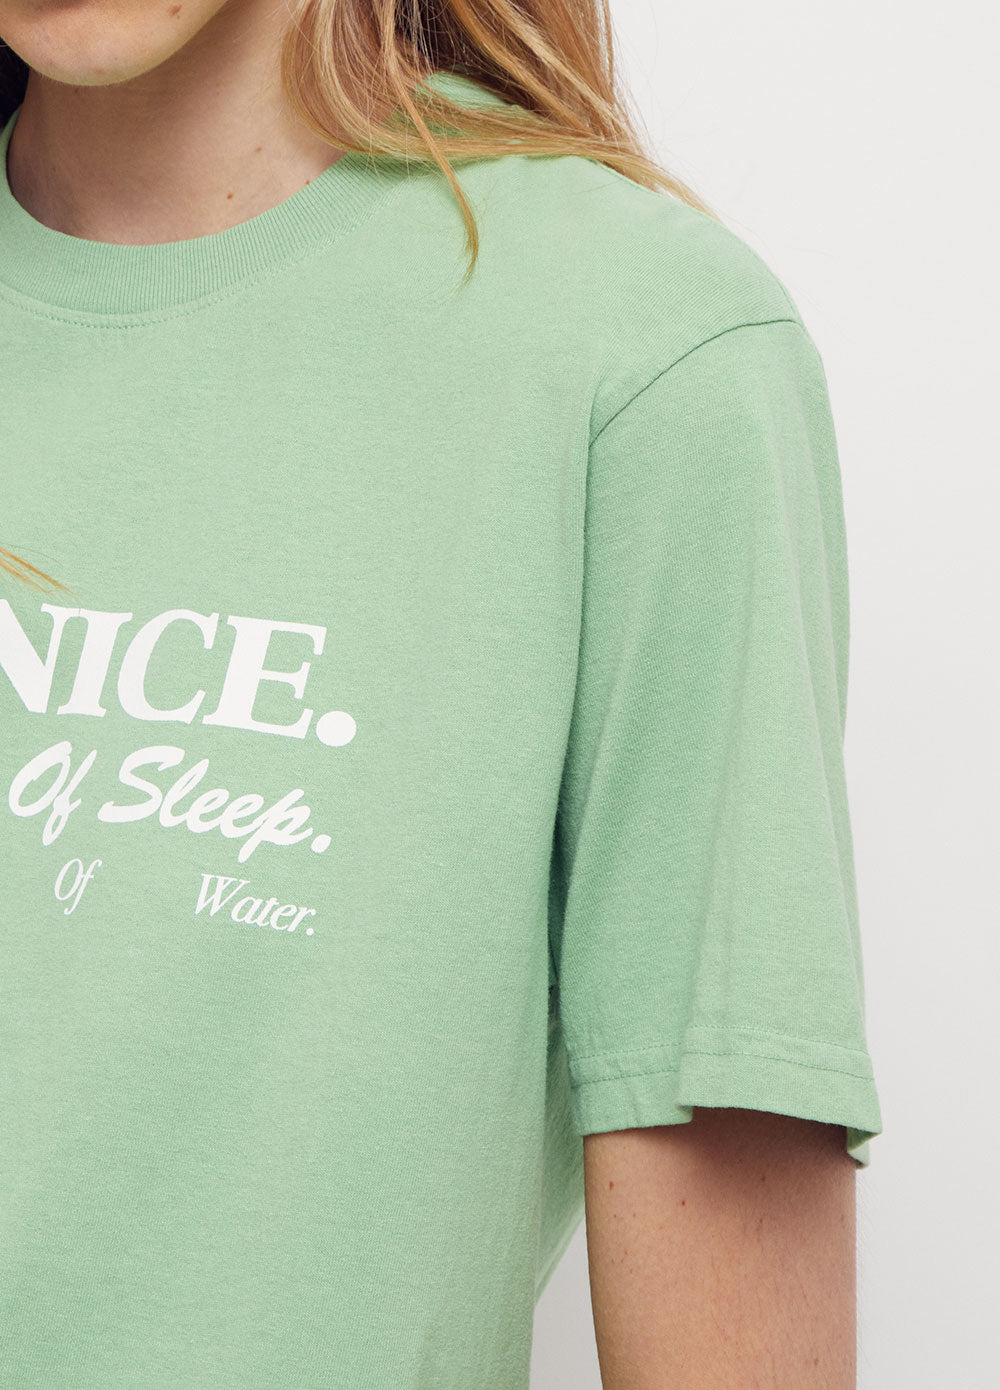 Be Nice T-shirt